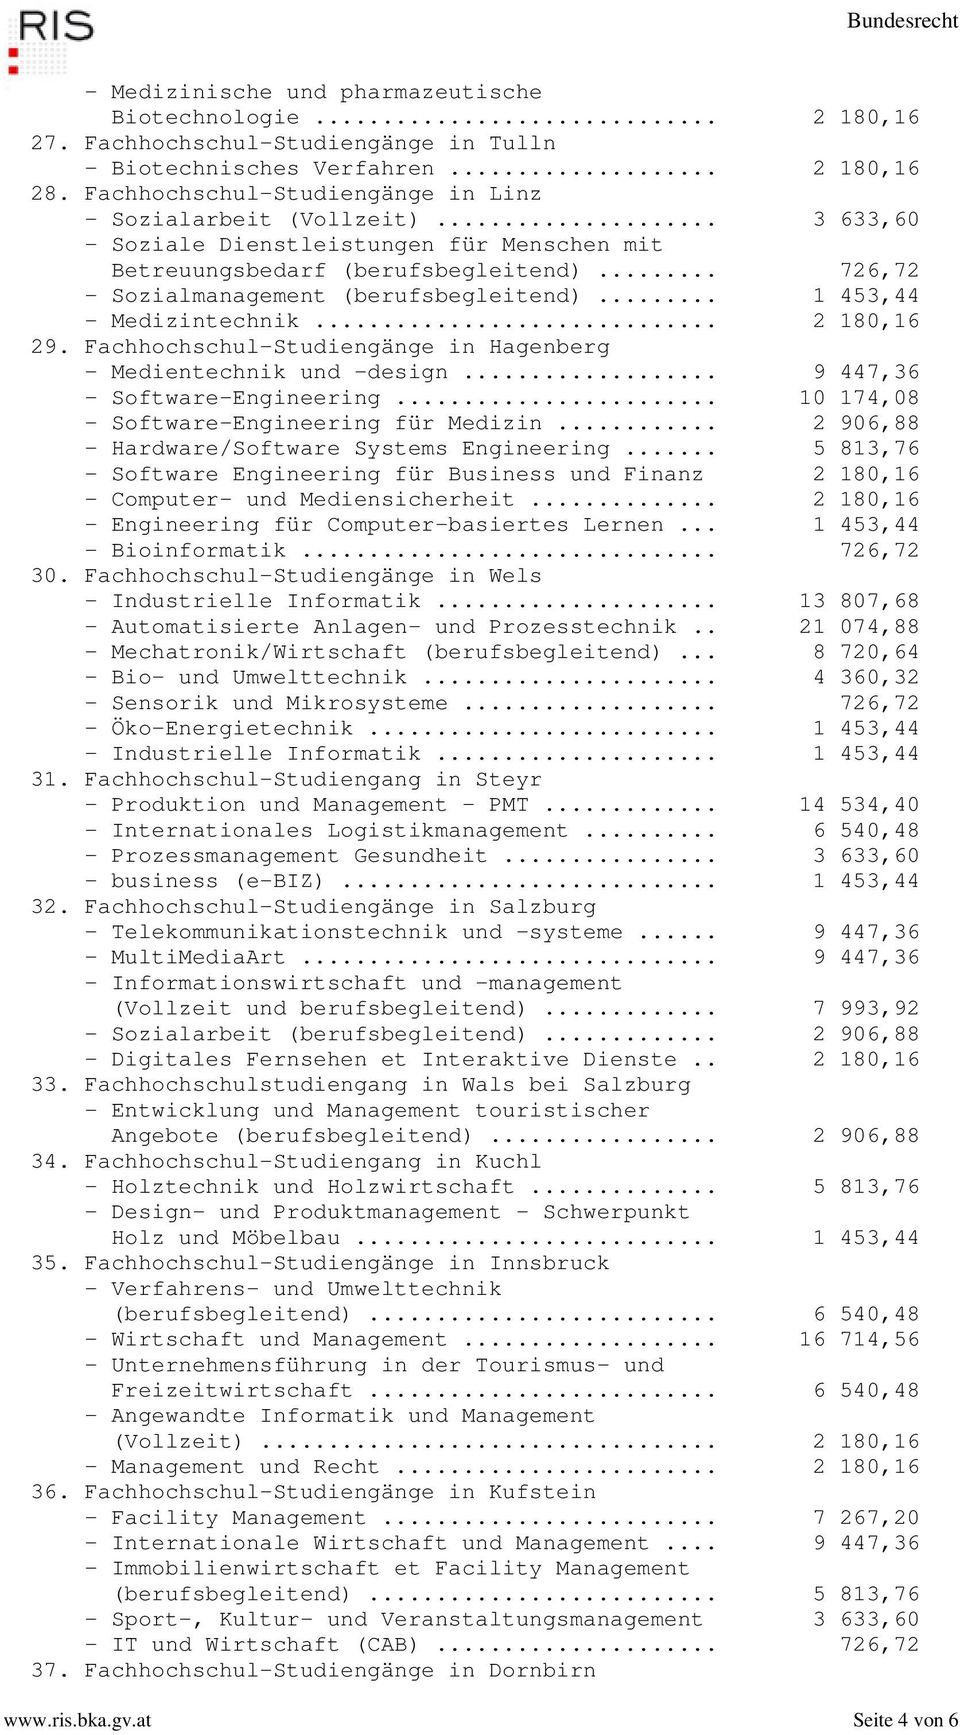 .. 1 453,44 - Medizintechnik... 2 180,16 29. Fachhochschul-Studiengänge in Hagenberg - Medientechnik und -design... 9 447,36 - Software-Engineering... 10 174,08 - Software-Engineering für Medizin.